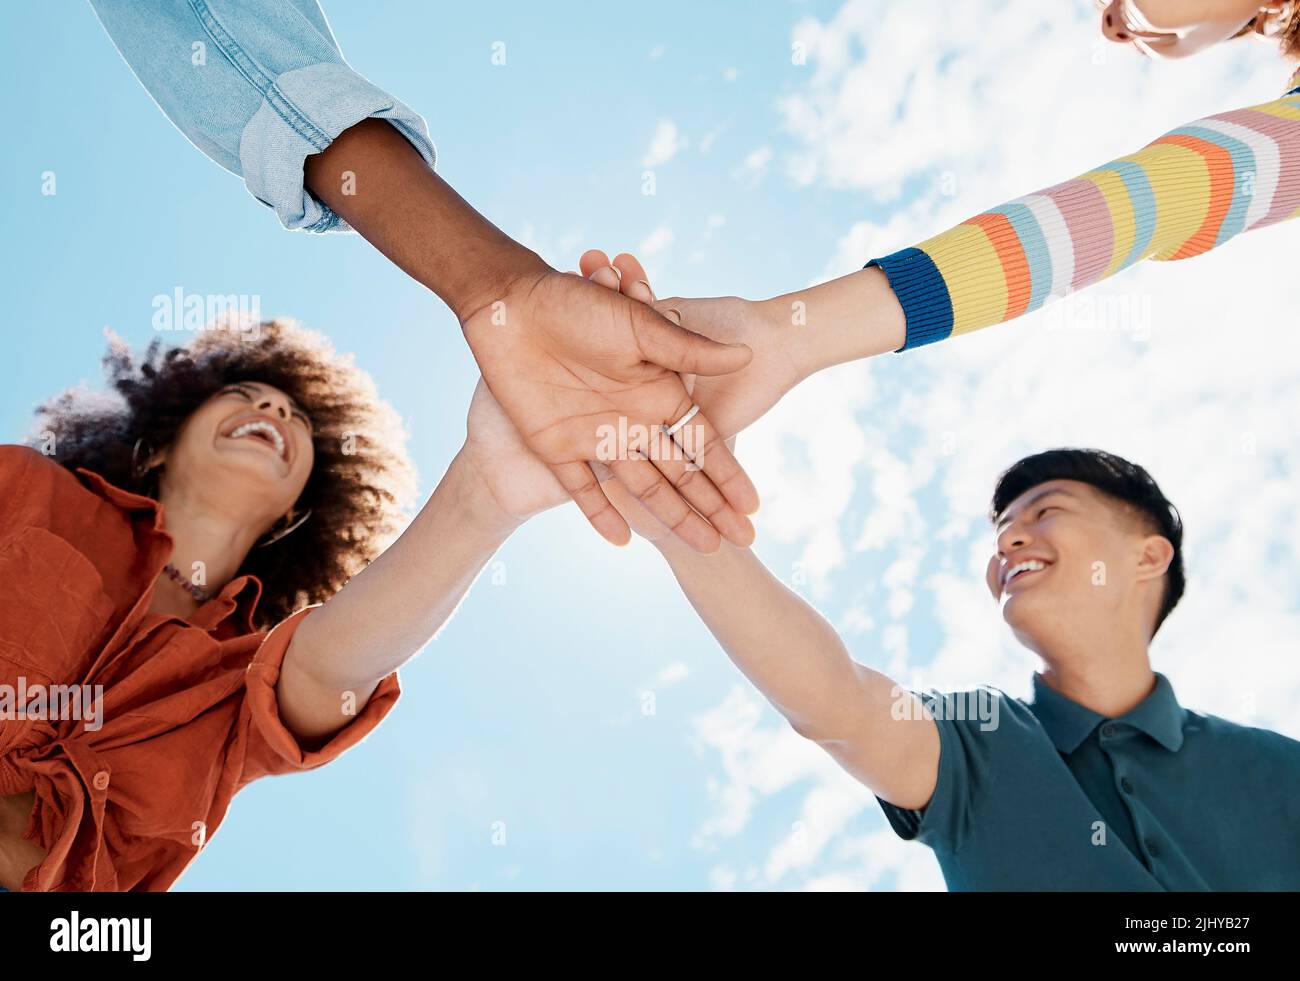 Une vue rapprochée basse d'un groupe de jeunes amis divers se joignant à la main lors d'un caucus tout en souriant avec un ciel bleu en arrière-plan lors d'une journée ensoleillée Banque D'Images